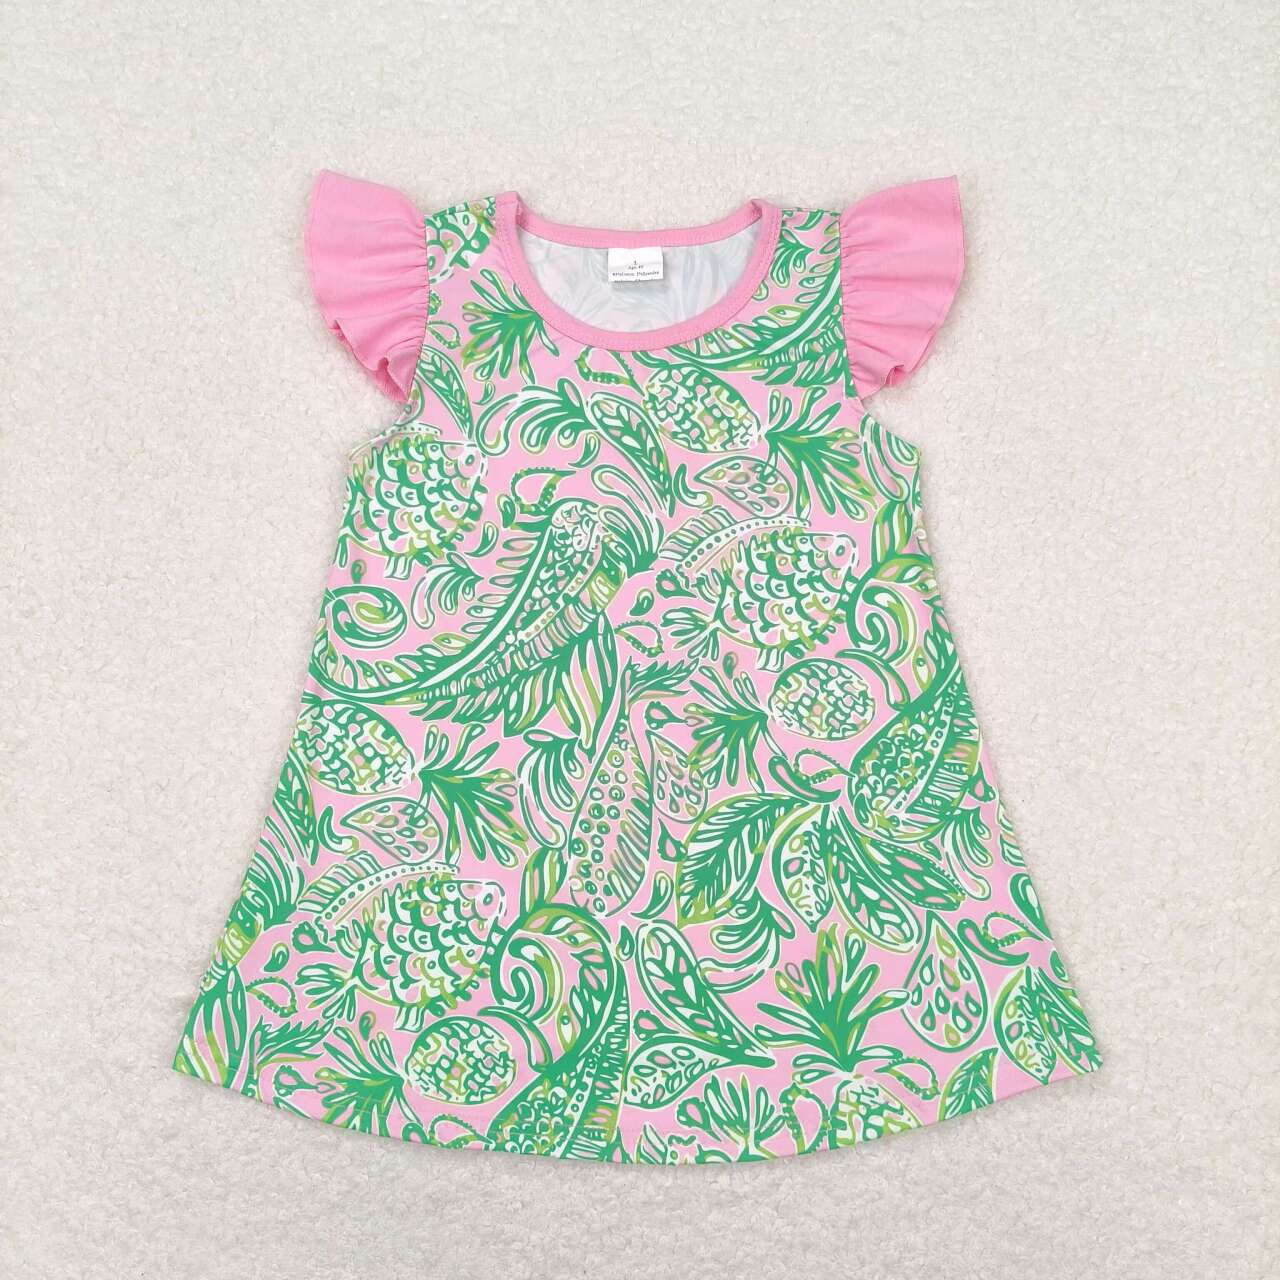 GT0561  Green Water Seaweed Flowers Print Girls Summer Tee Shirts Top